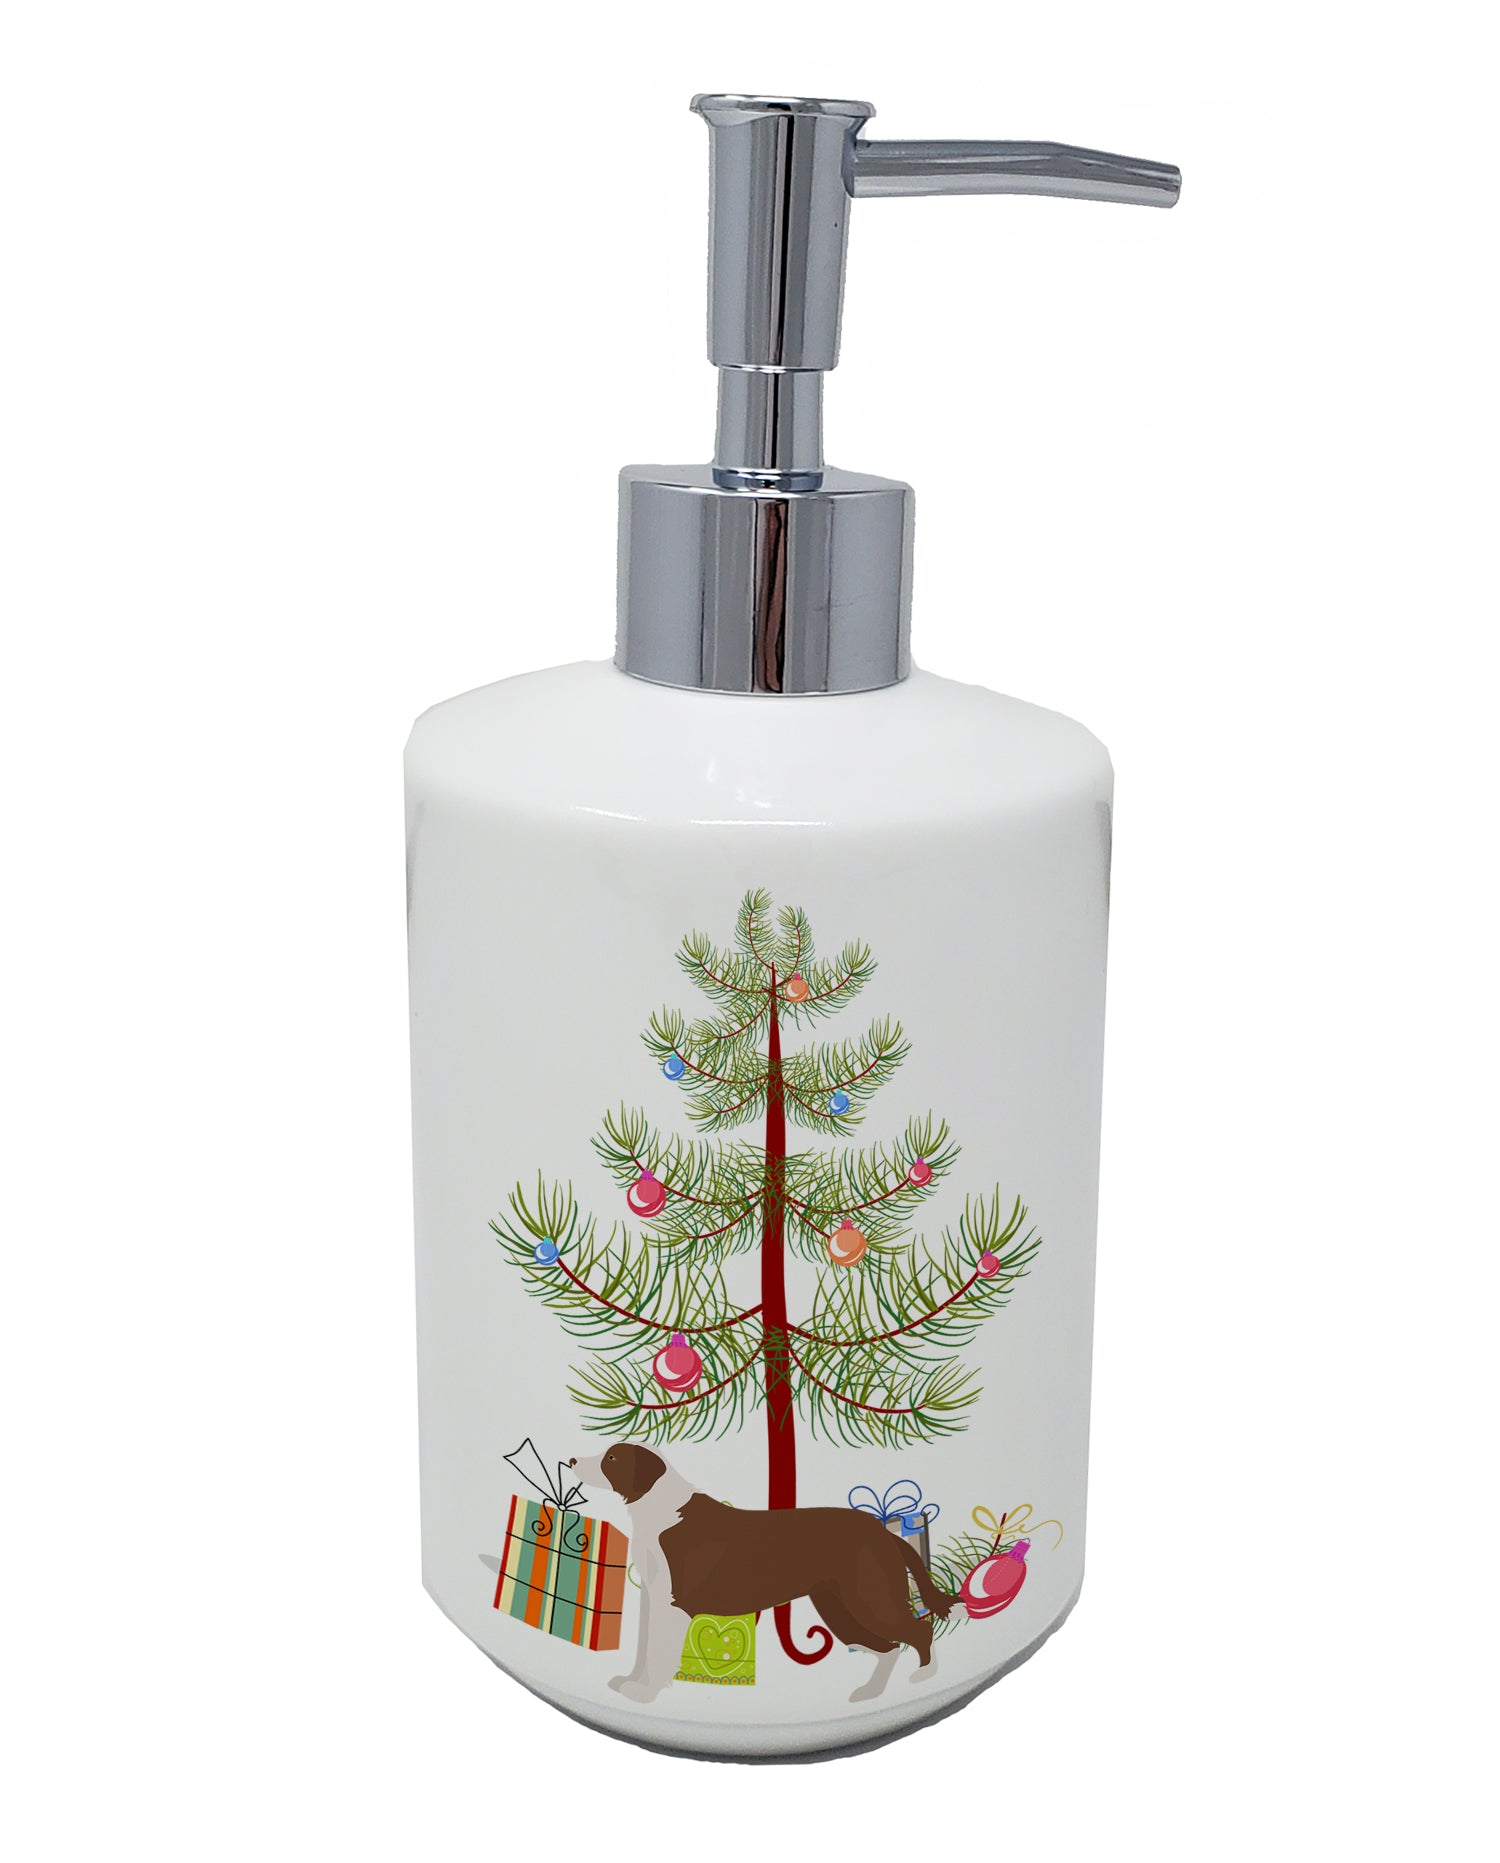 Buy this Borador Christmas Tree Ceramic Soap Dispenser